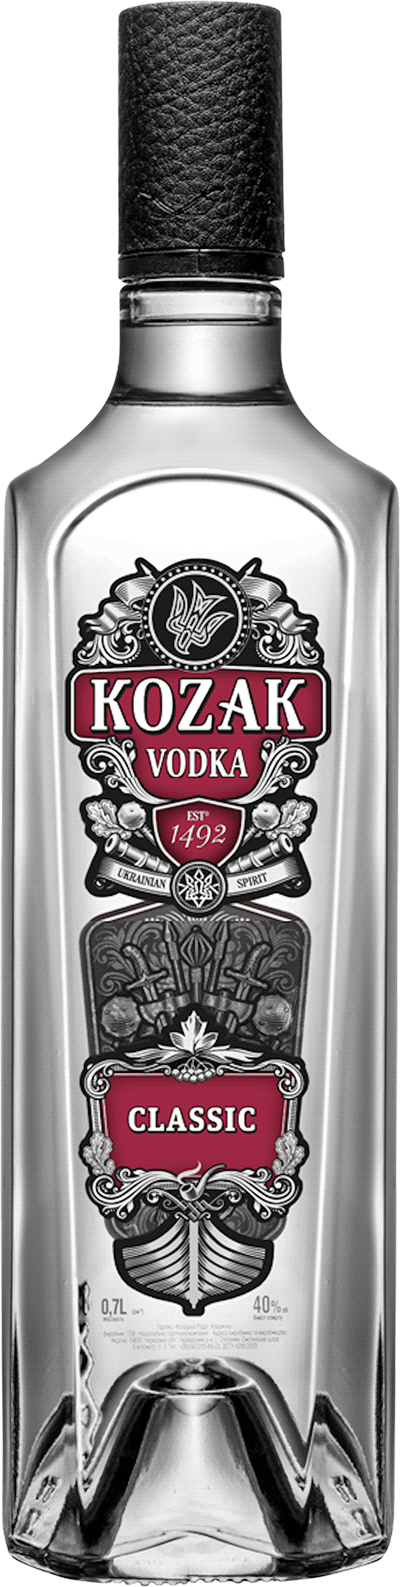 Kozak Classic Vodka